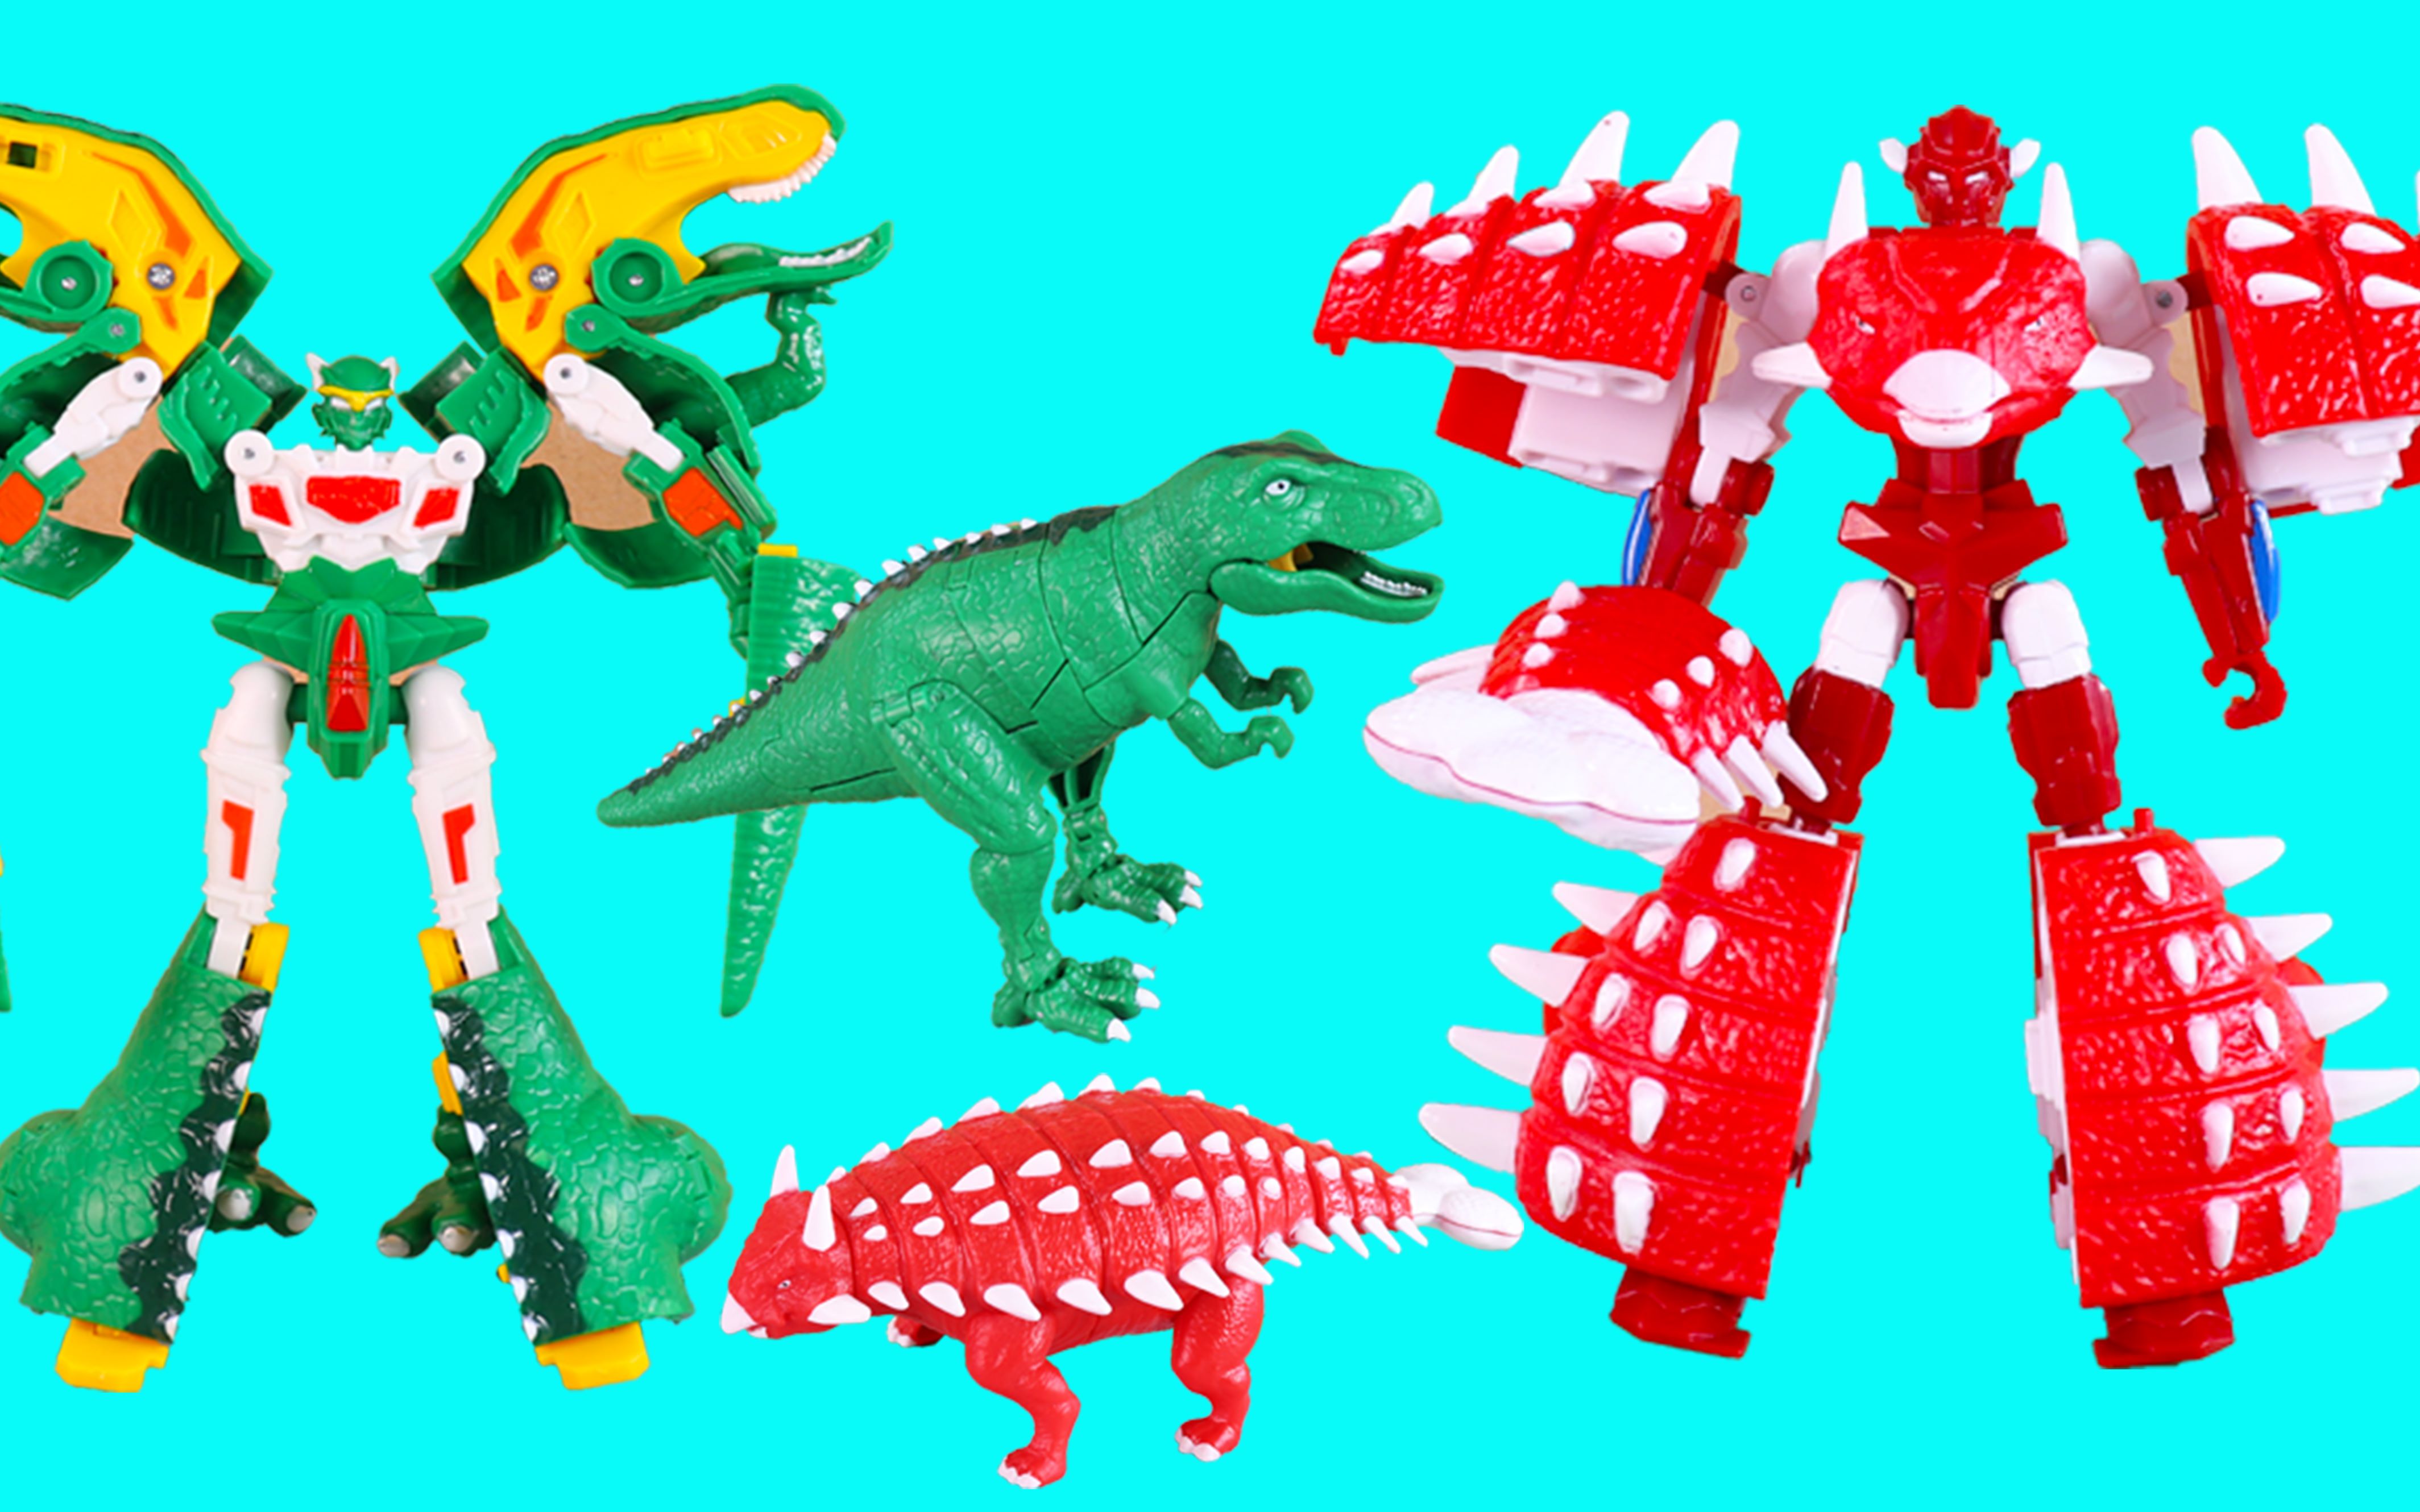 新奇暴龙战车玩具 变形烈焰霸王龙和变形巨盾甲龙